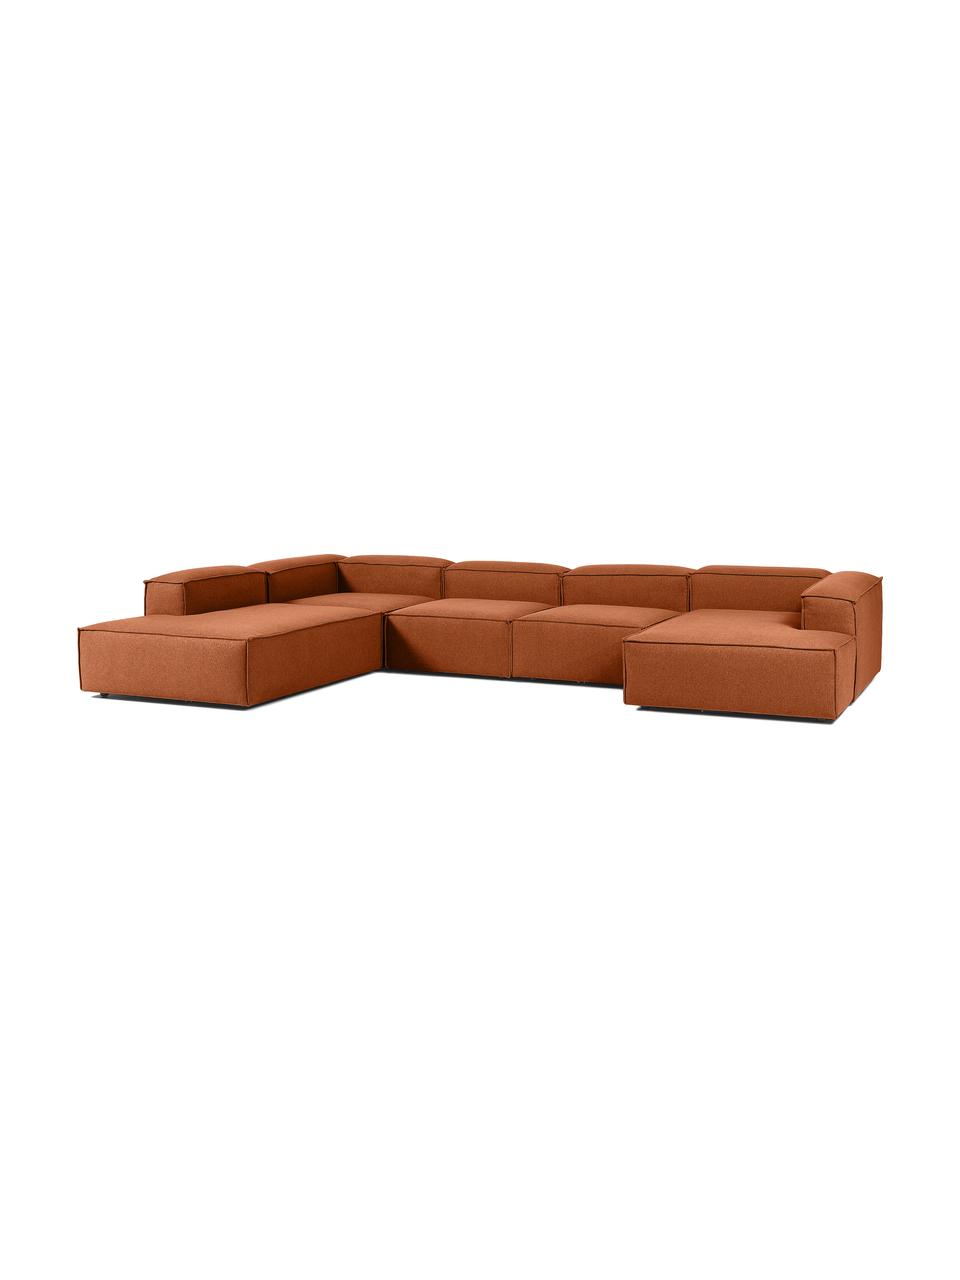 Canapé lounge modulable Lennon, Tissu terracotta, larg. 418 x prof. 68 cm, méridienne à gauche